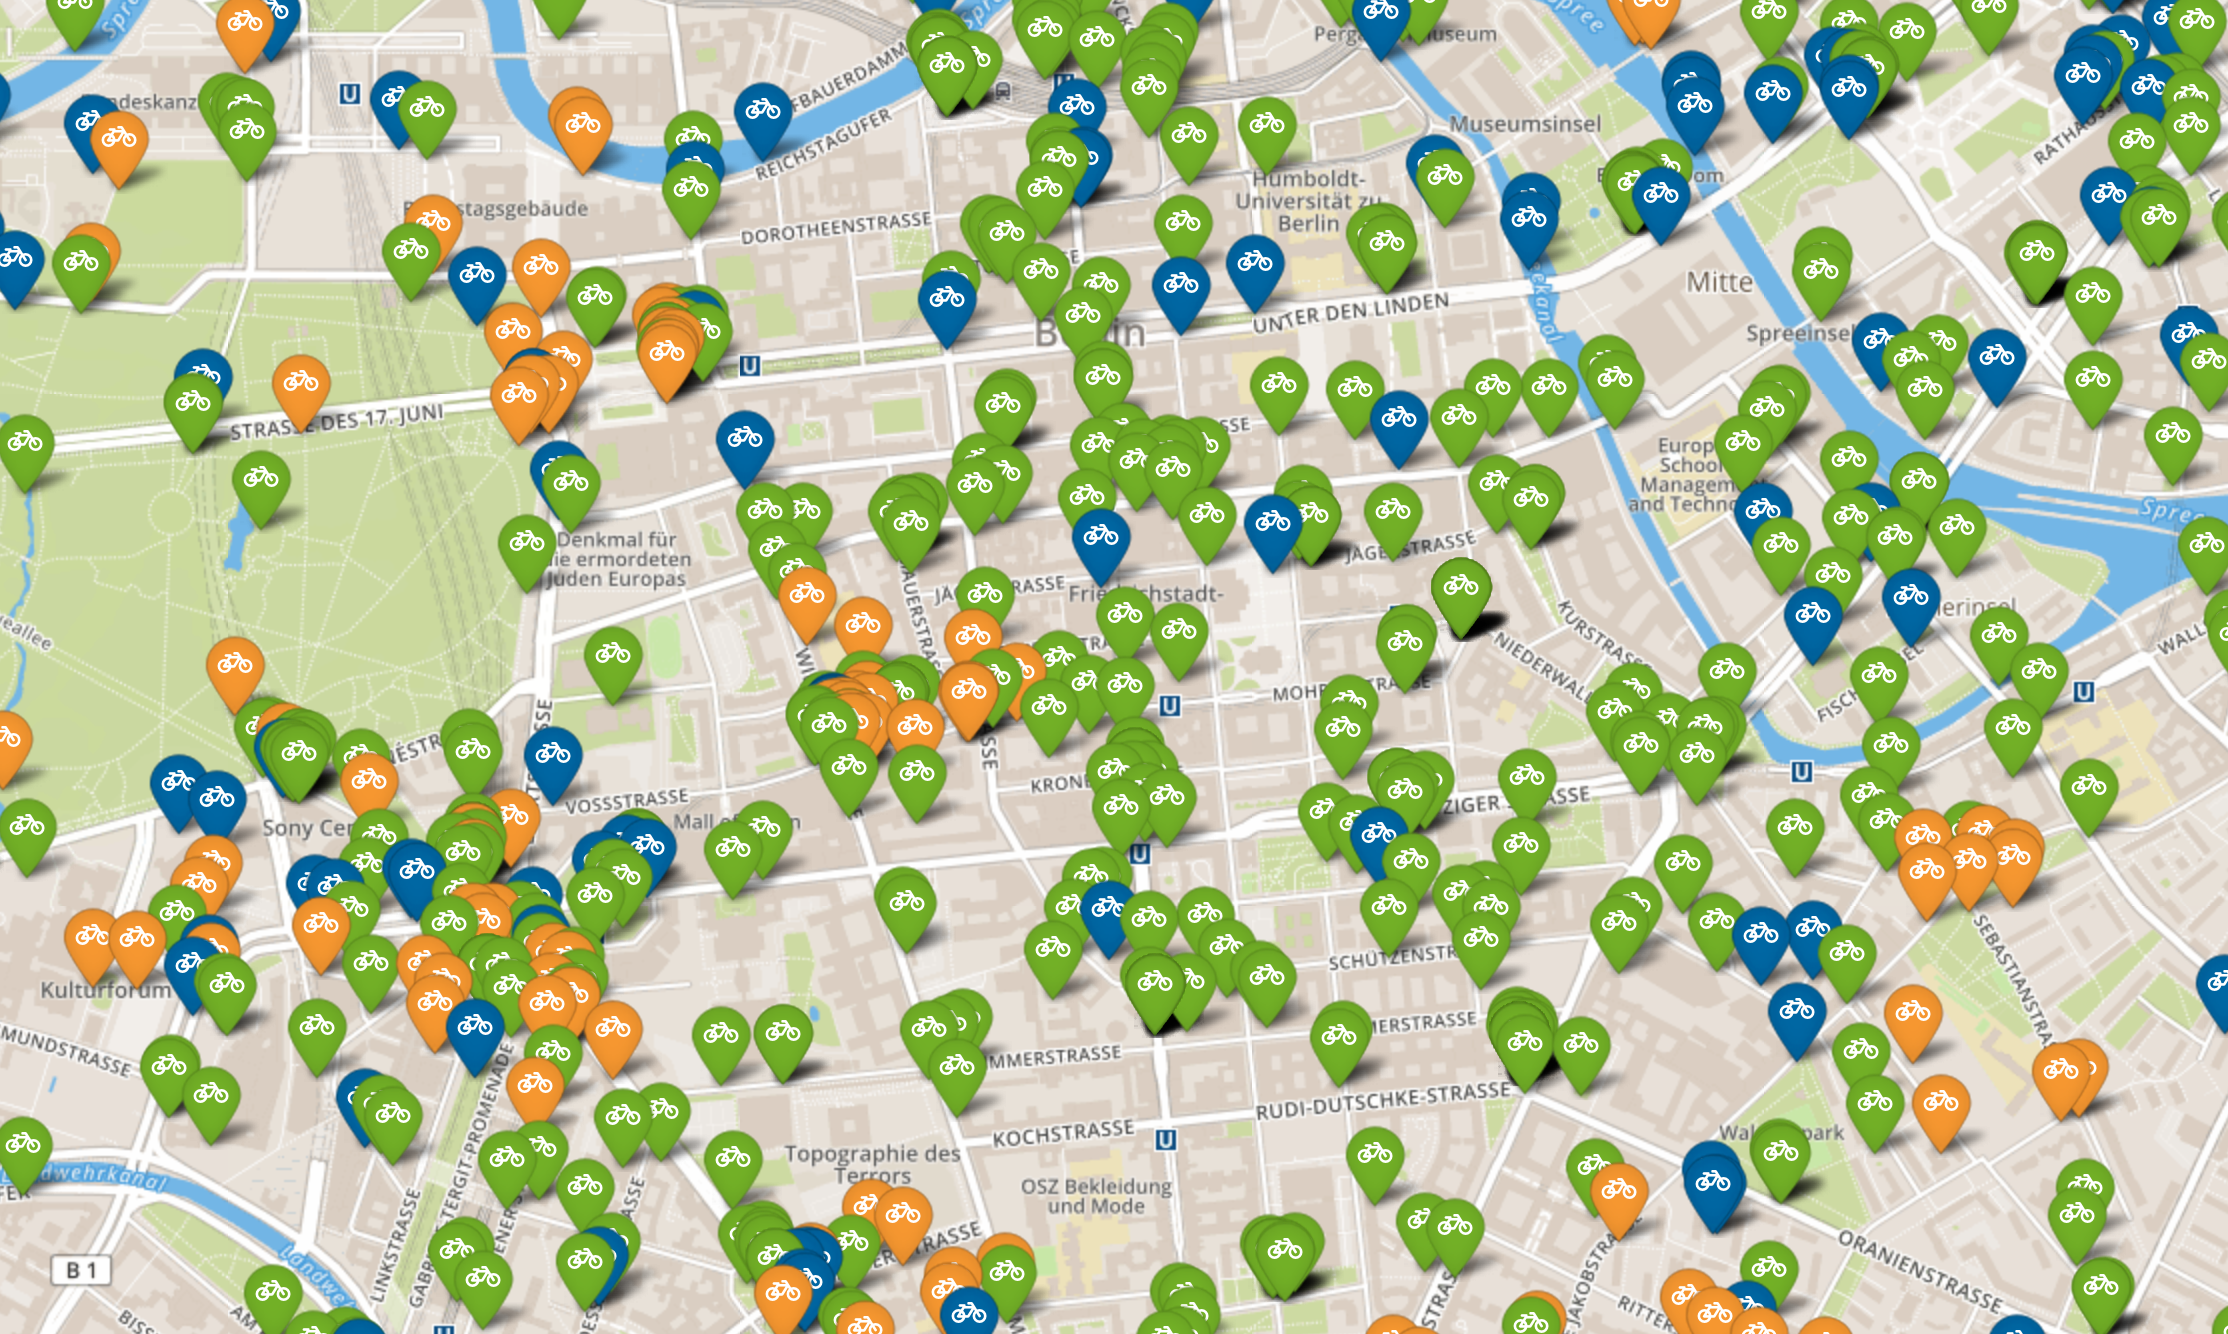 Ausschnitt aus Berlin mit allen Nextbike (blau), Lidlbike (grün) und Mobike (orange) Positionen.